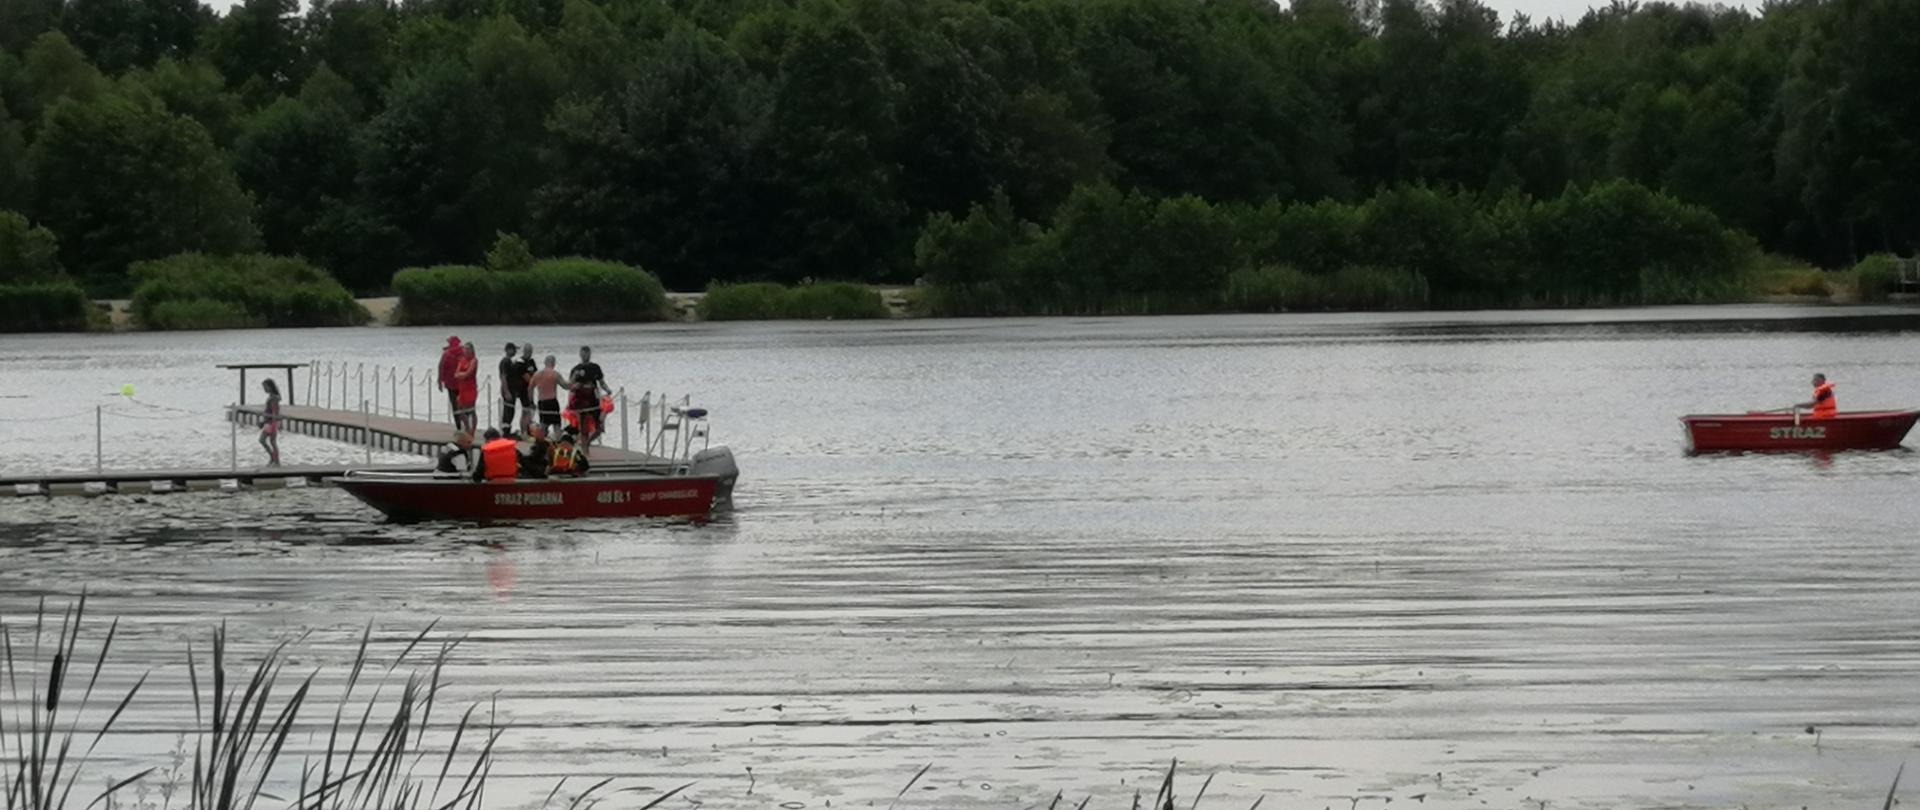 na zdjęciu widoczny zalew na nim dwie łodzie oraz strażacy i ratownicy na pomoście przygotowujący się do ćwiczeń w oddali las